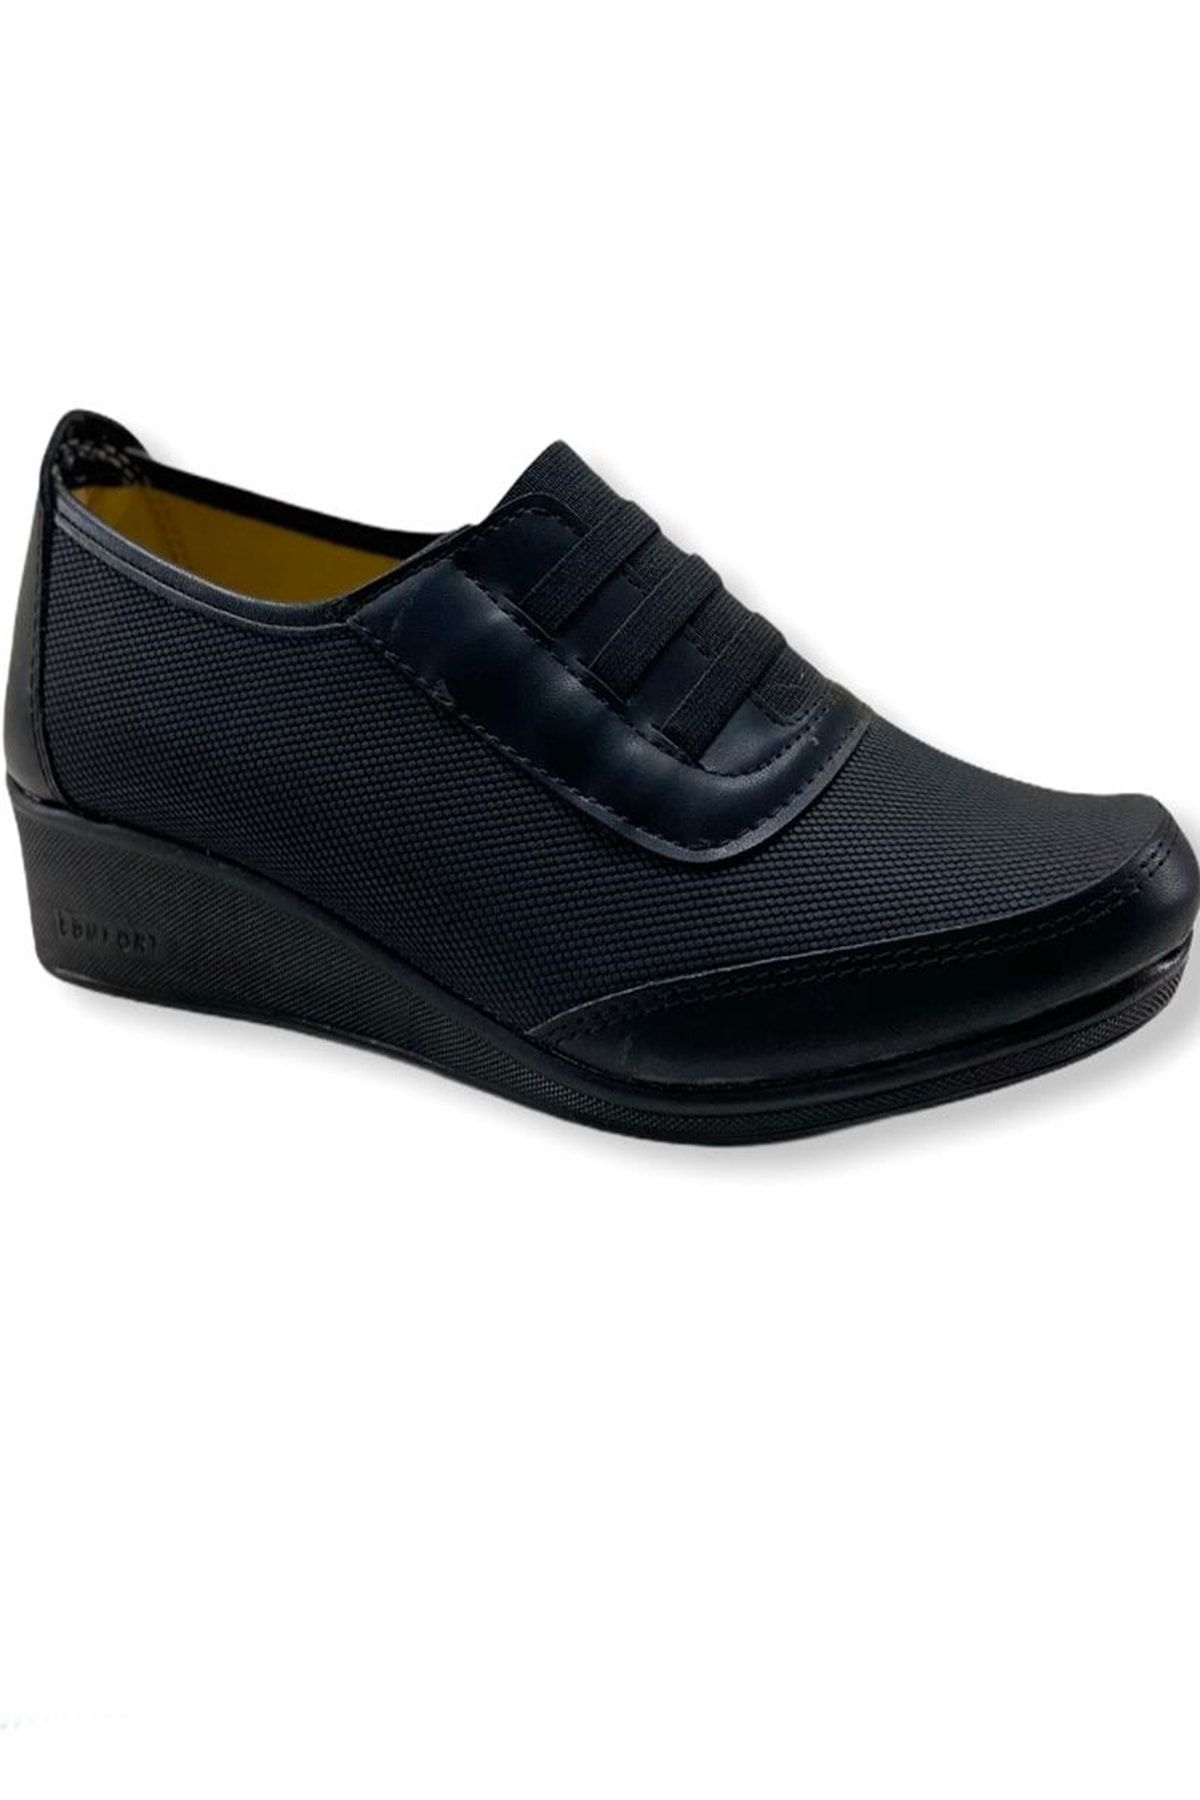 Ayzen Kadın Siyah Comfort Ayakkabı